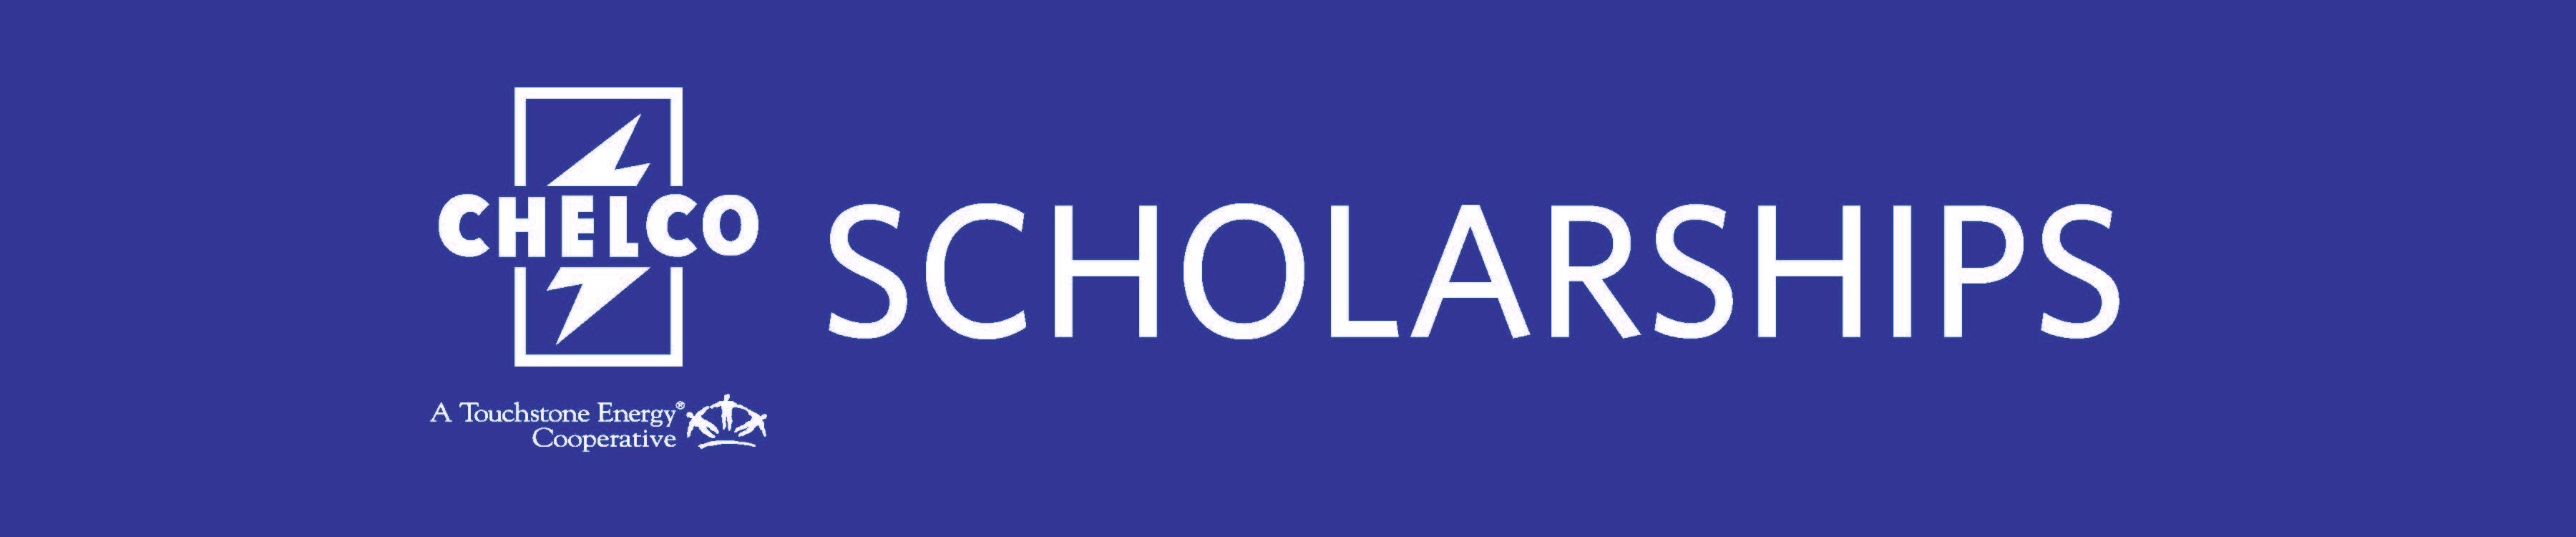 Scholarships%20website%20banner.jpg